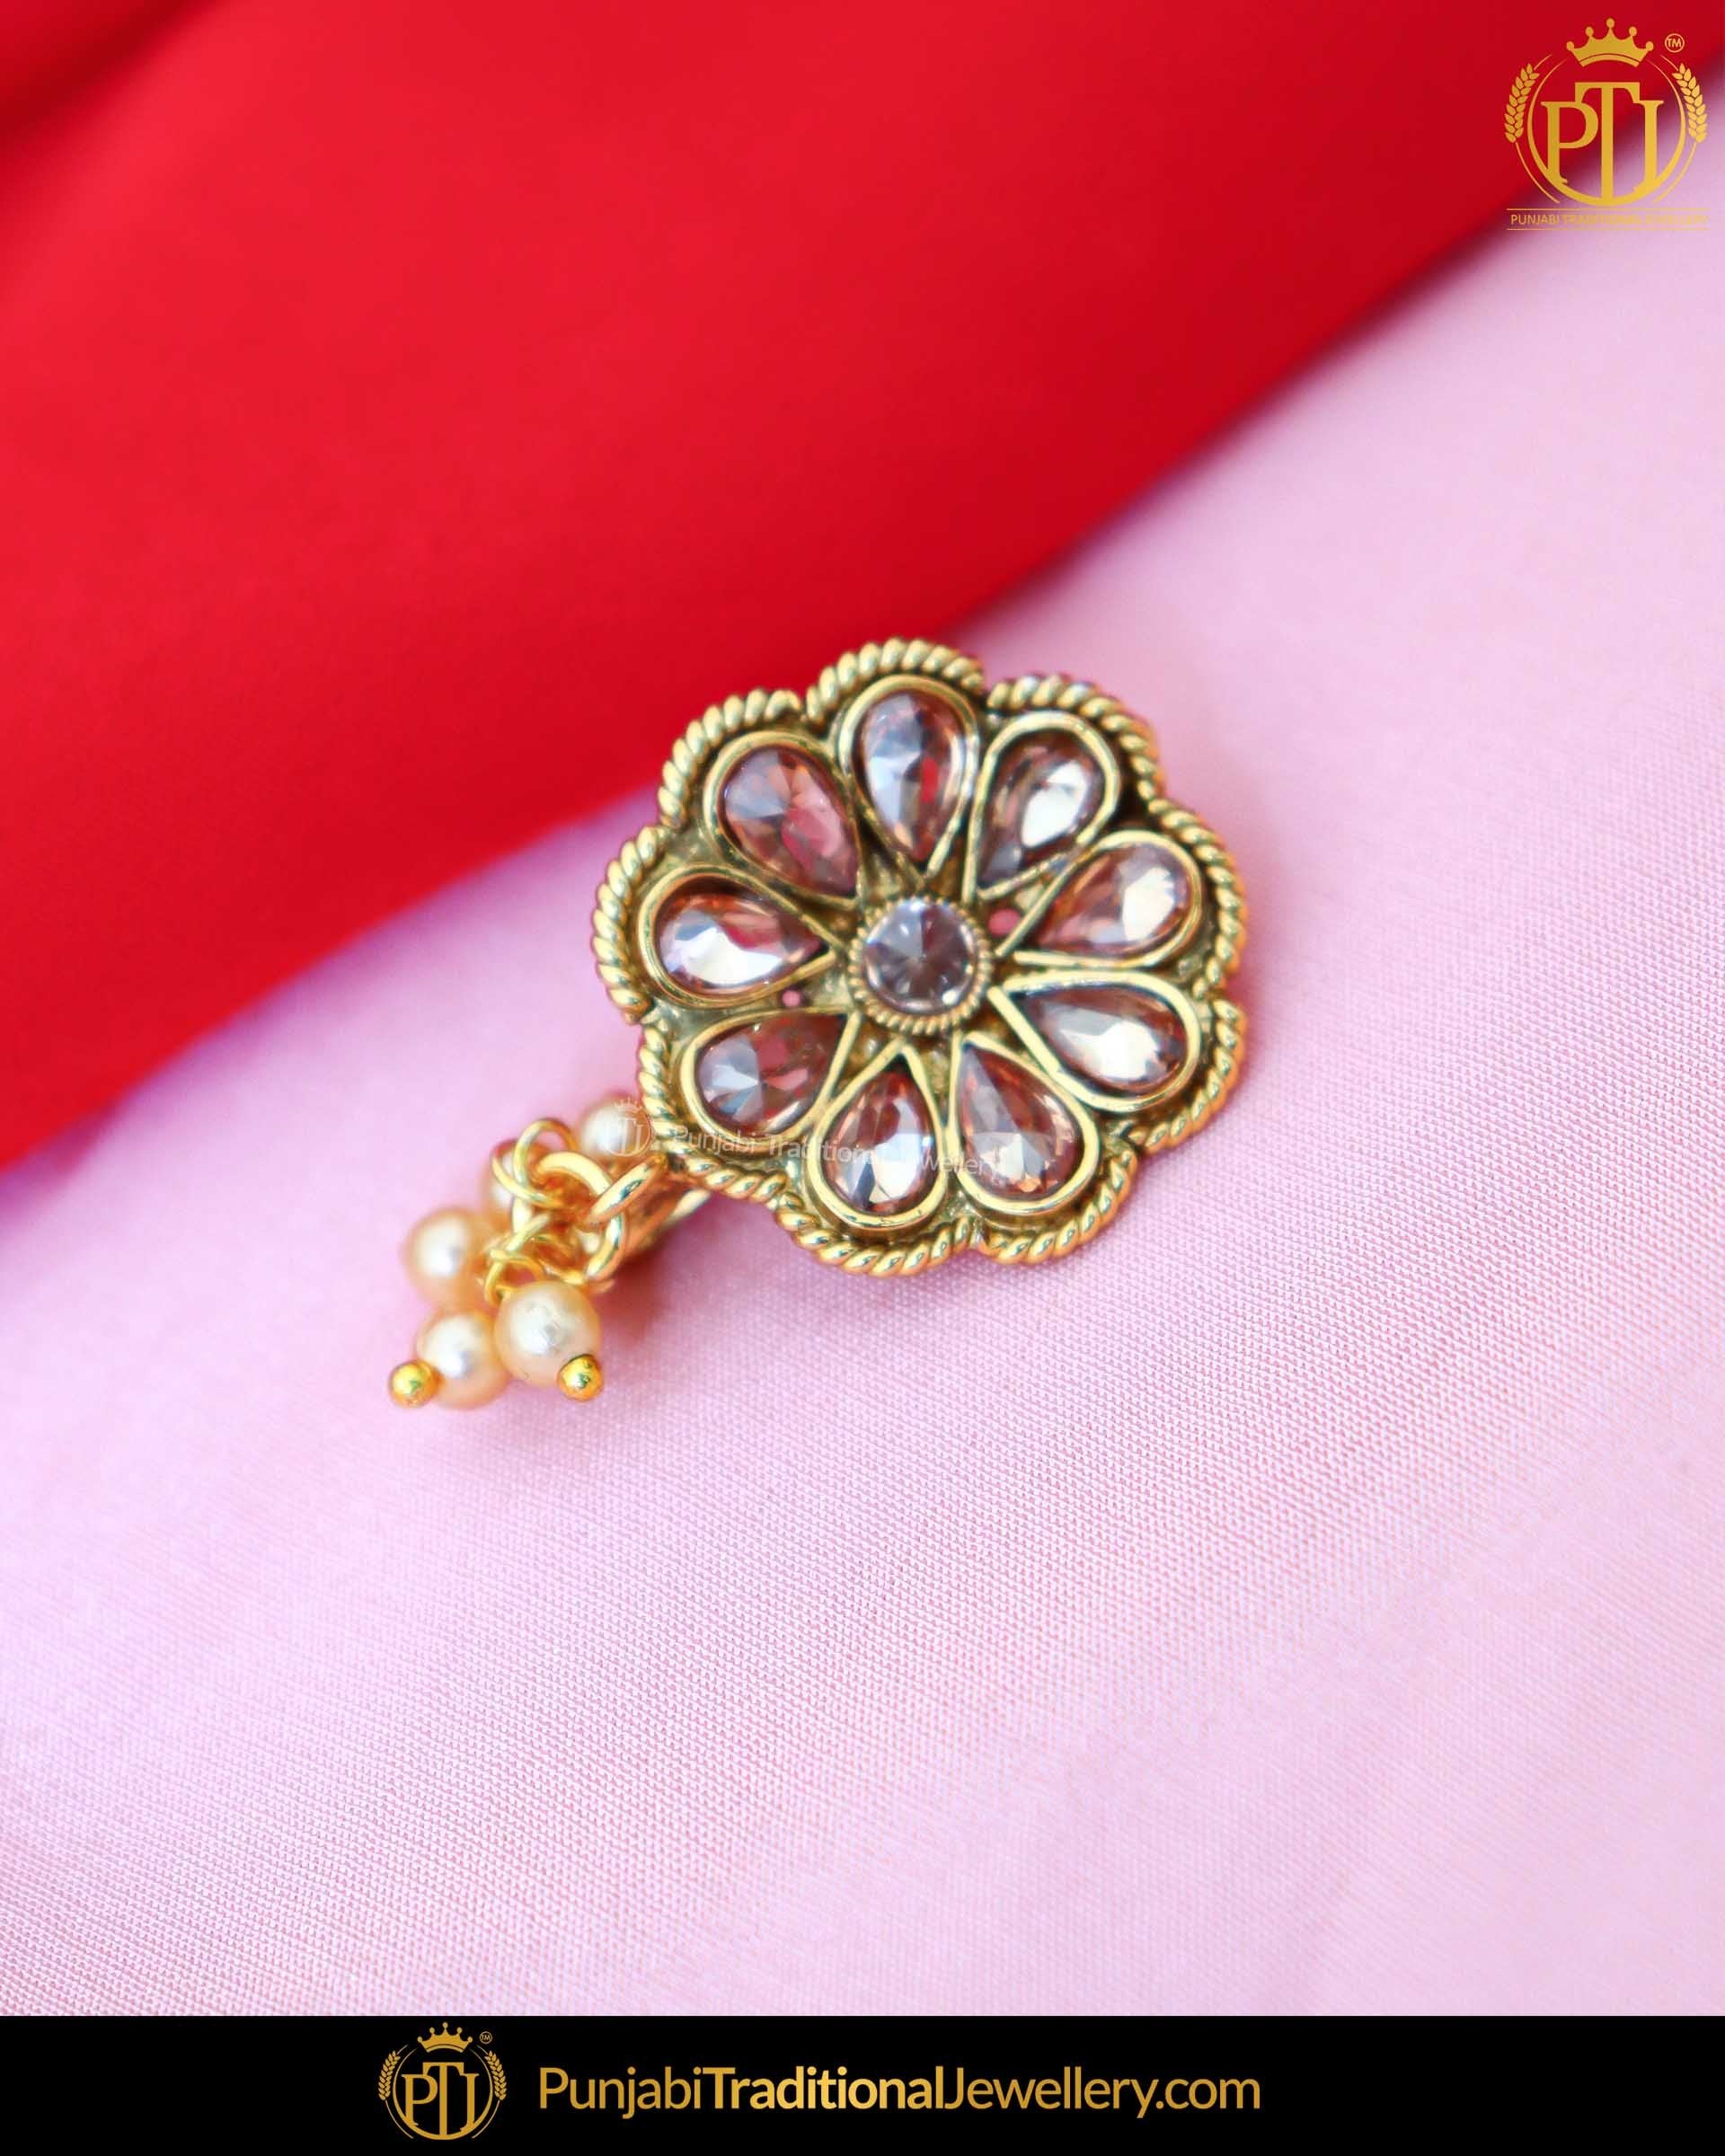 Pin on Punjabi traditional jewellery